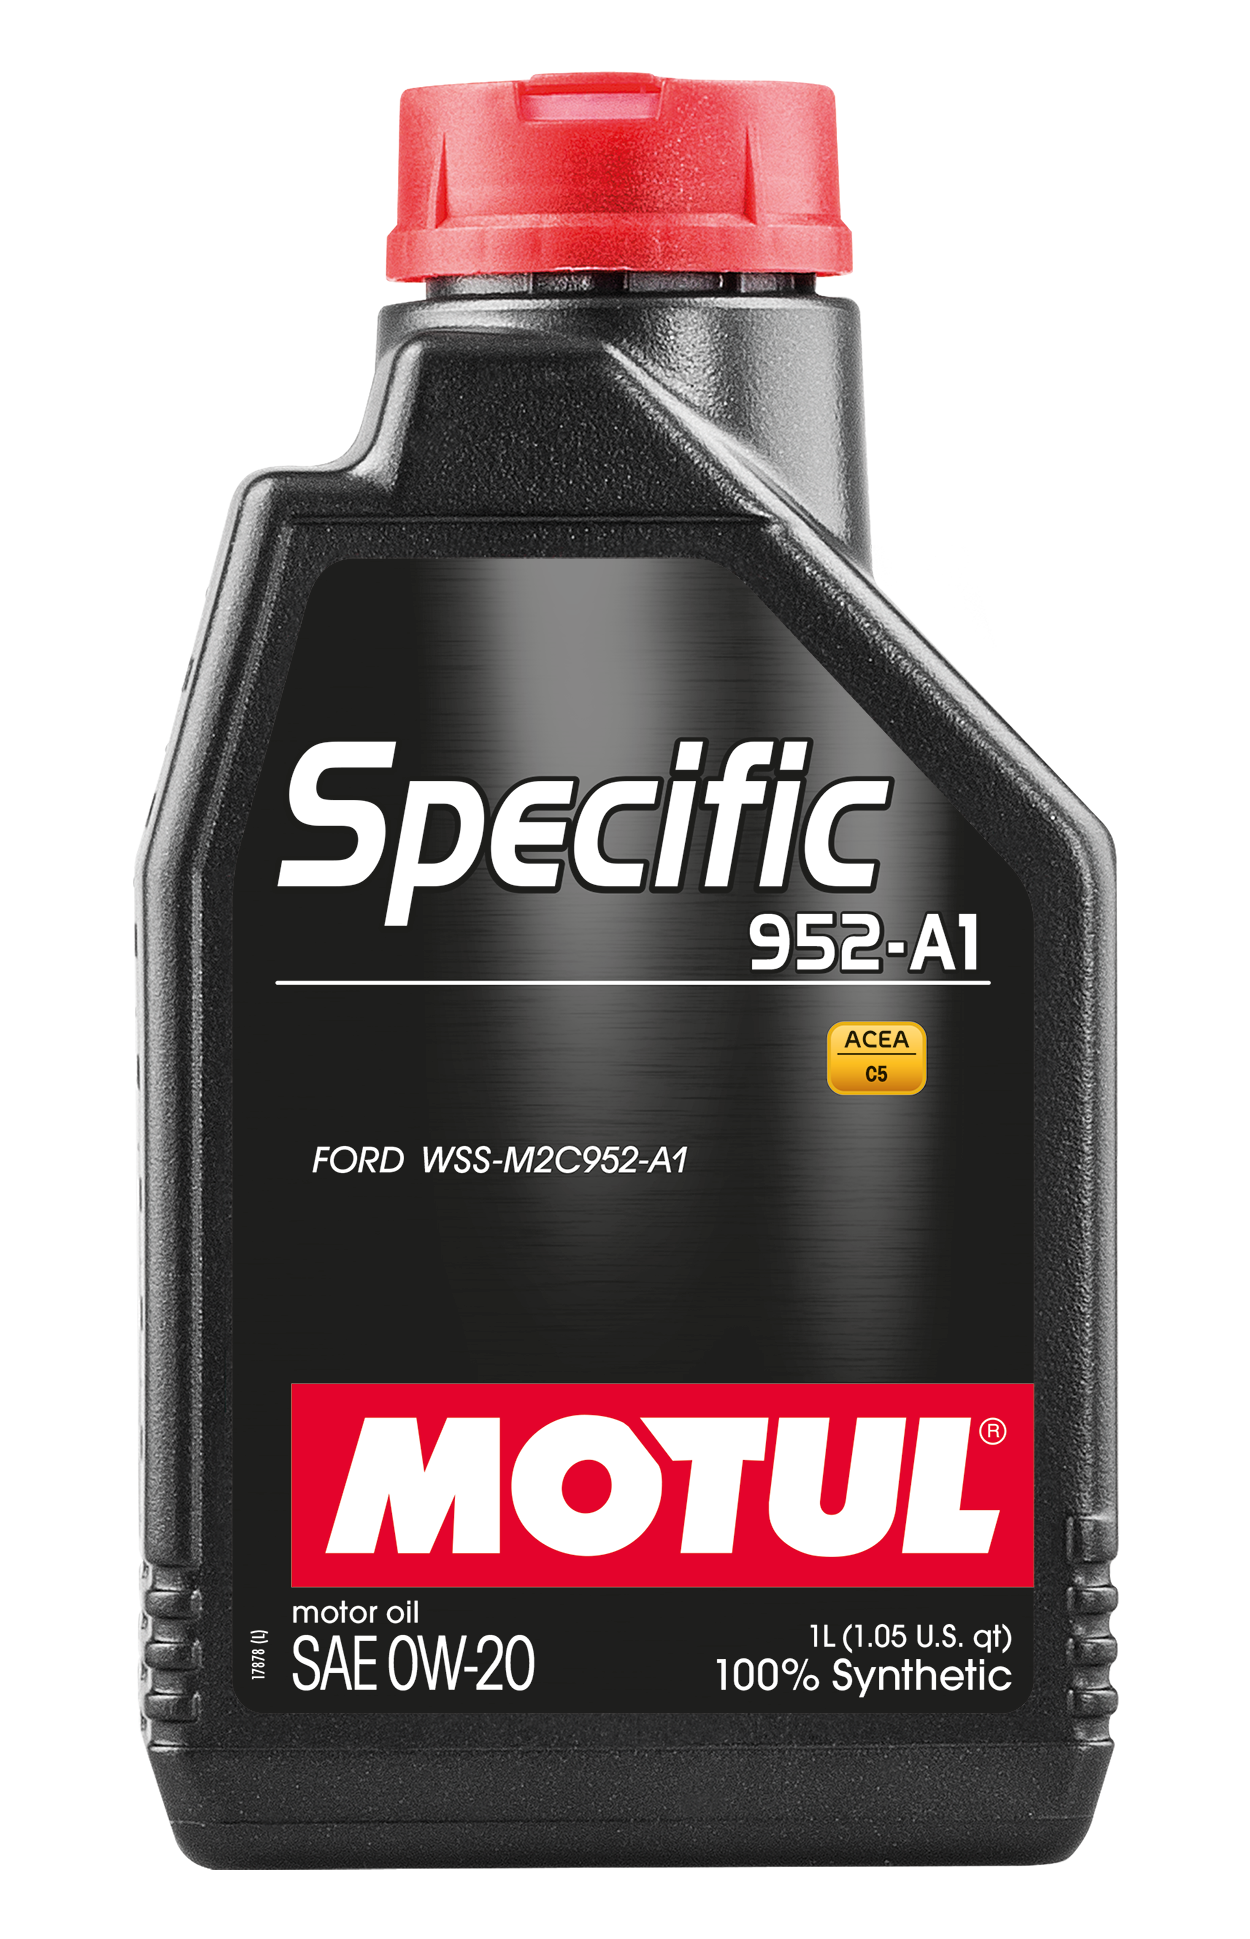 Motul SPECIFIC 952-A1 0W-20, 1 liter